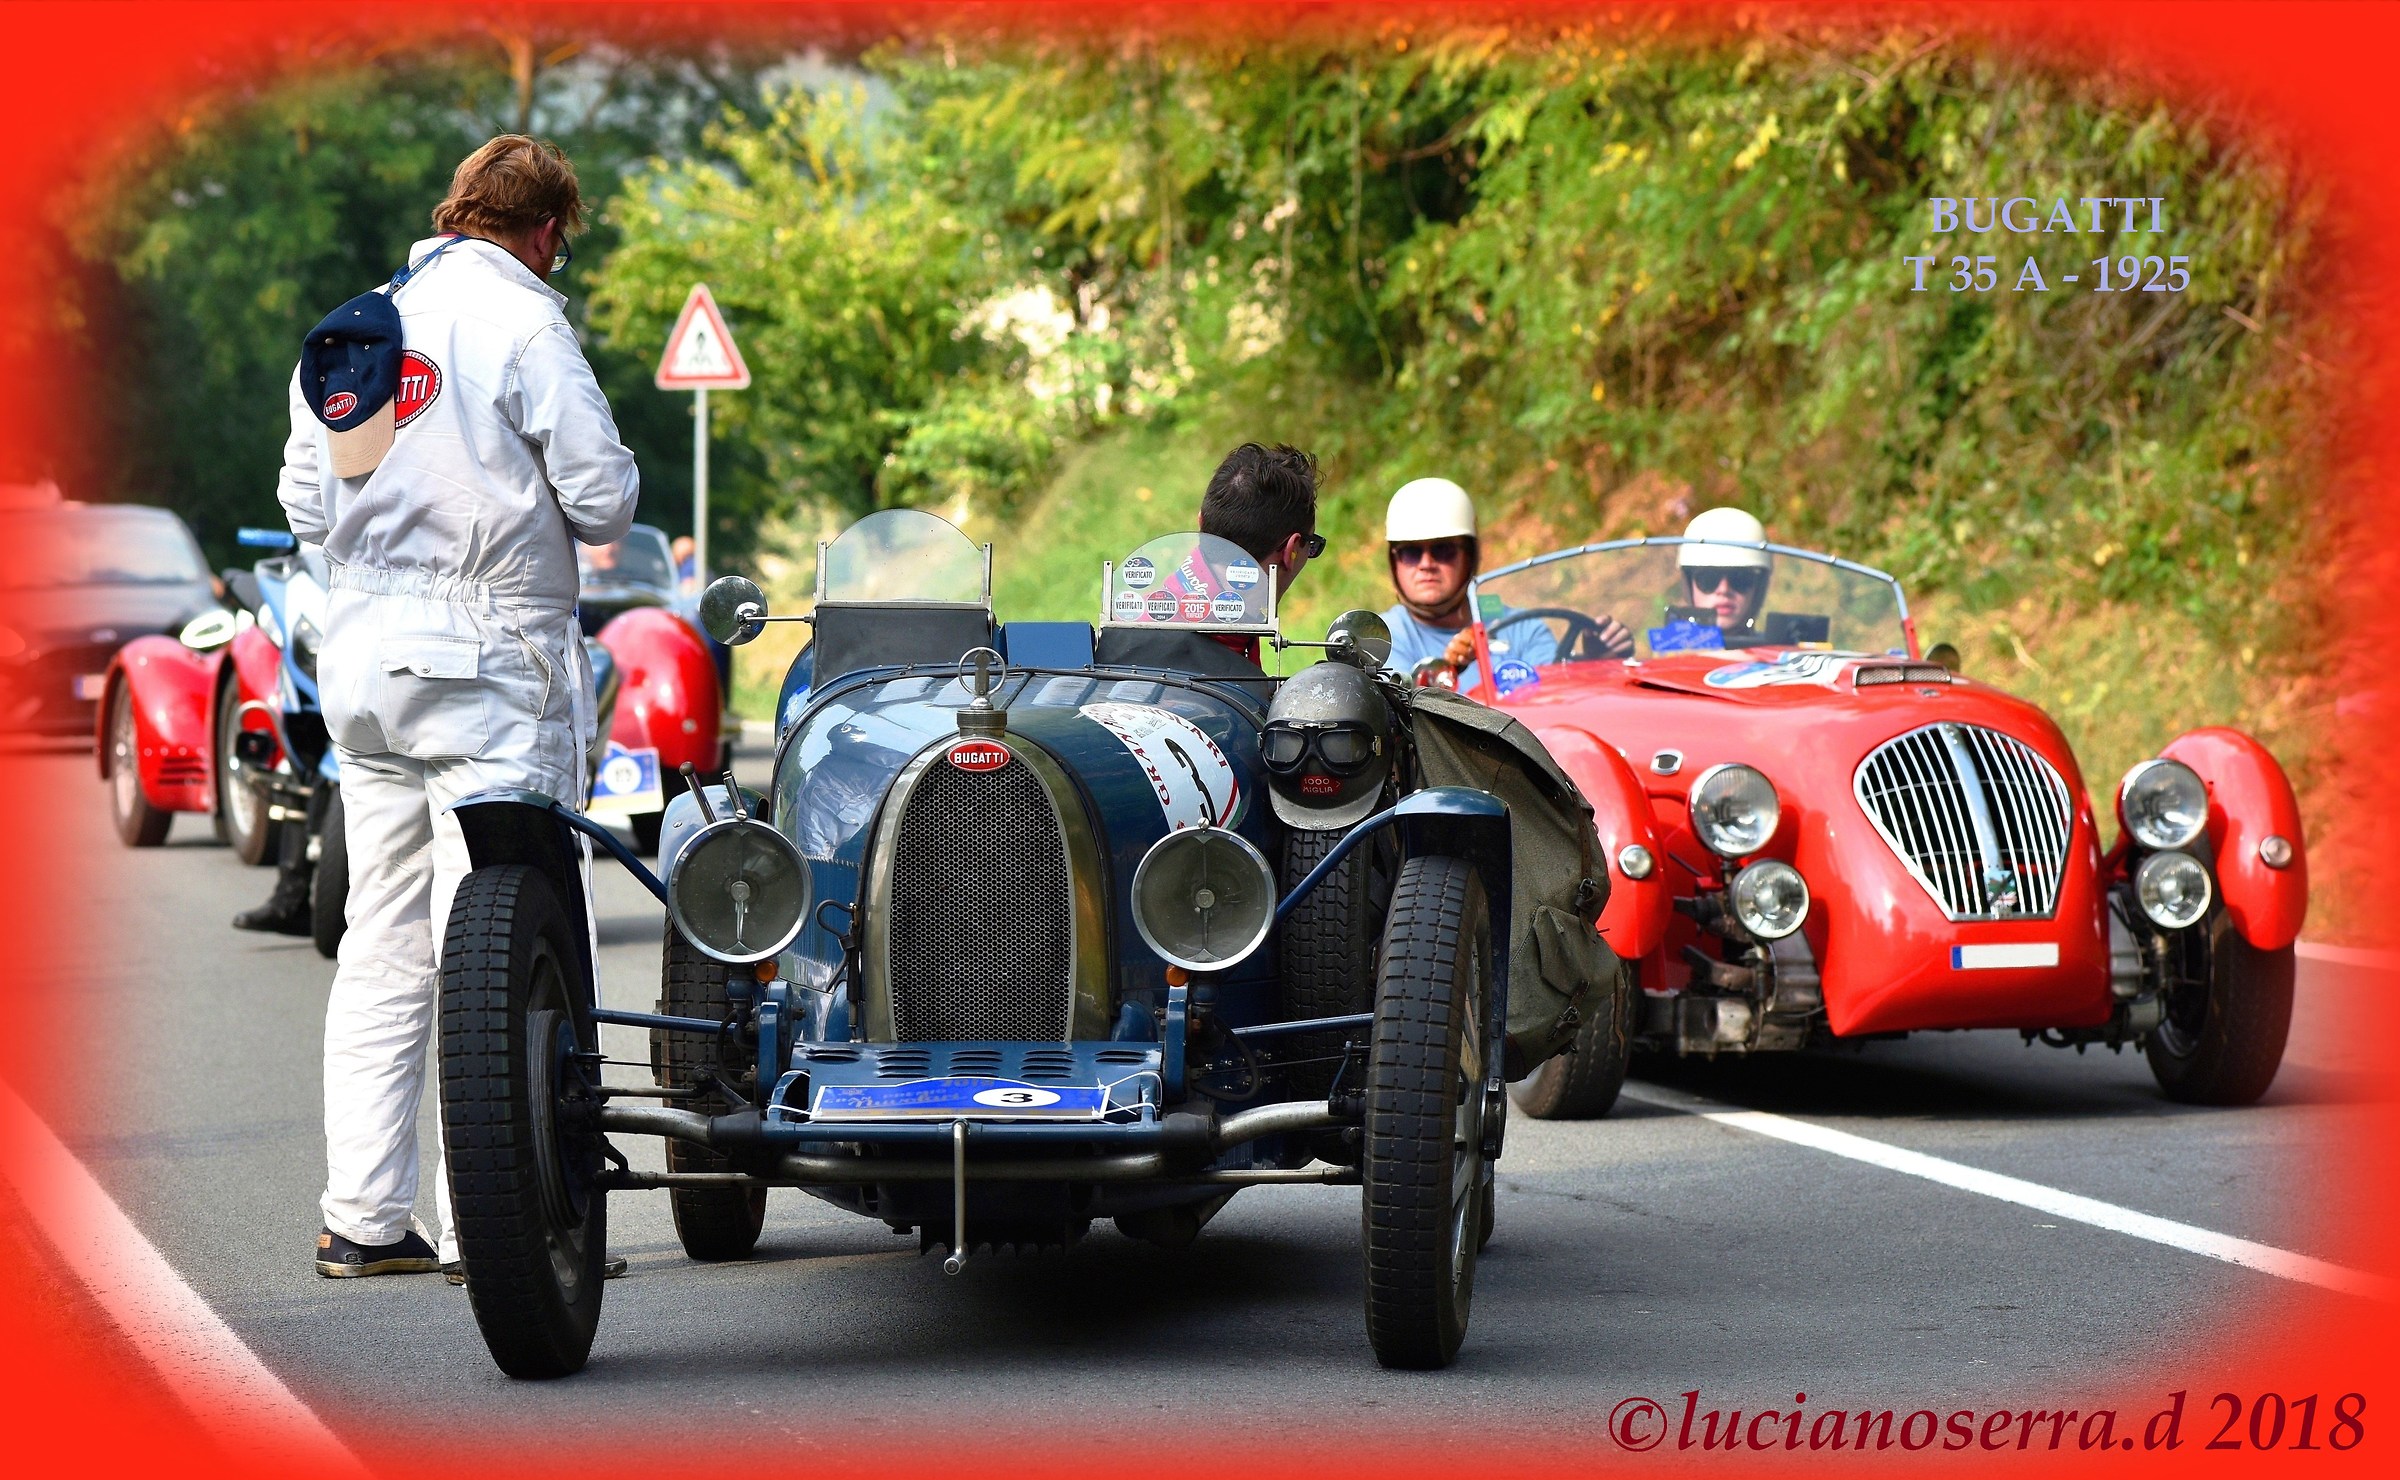 Bugatti Type 35 A - 1925...